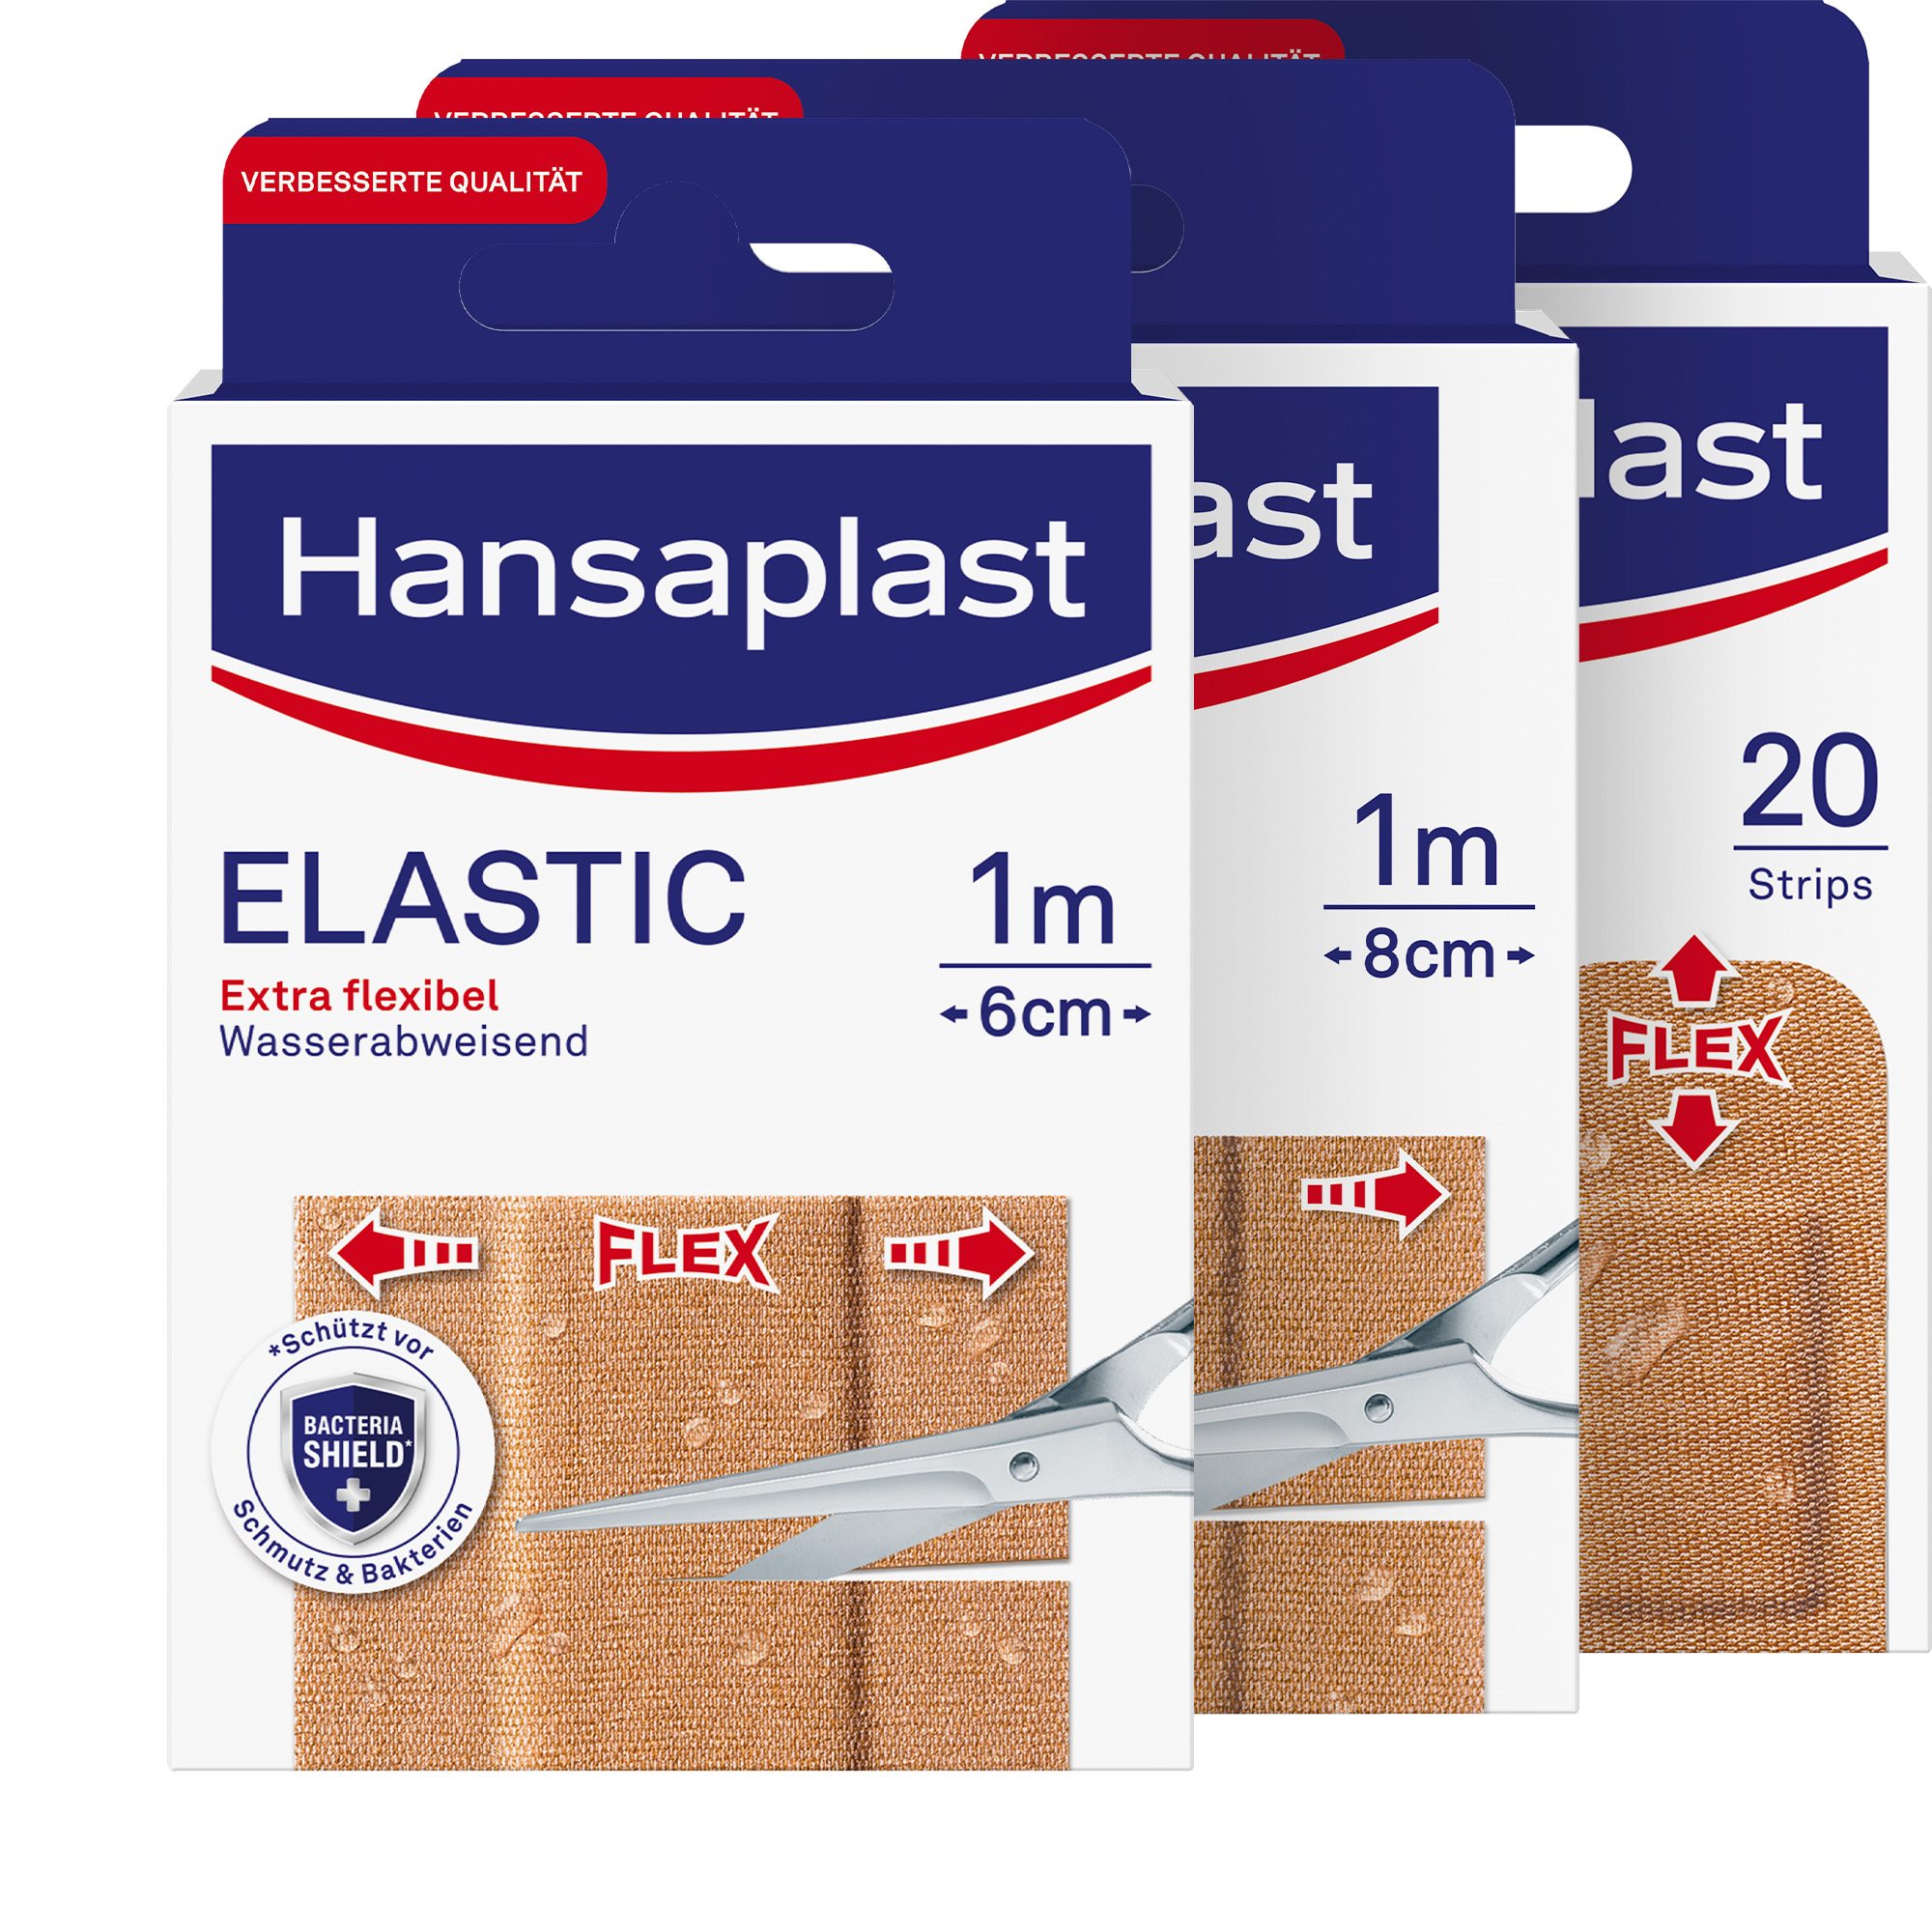 Elastic Pflaster für eine flexible Wundversorgung - Hansaplast